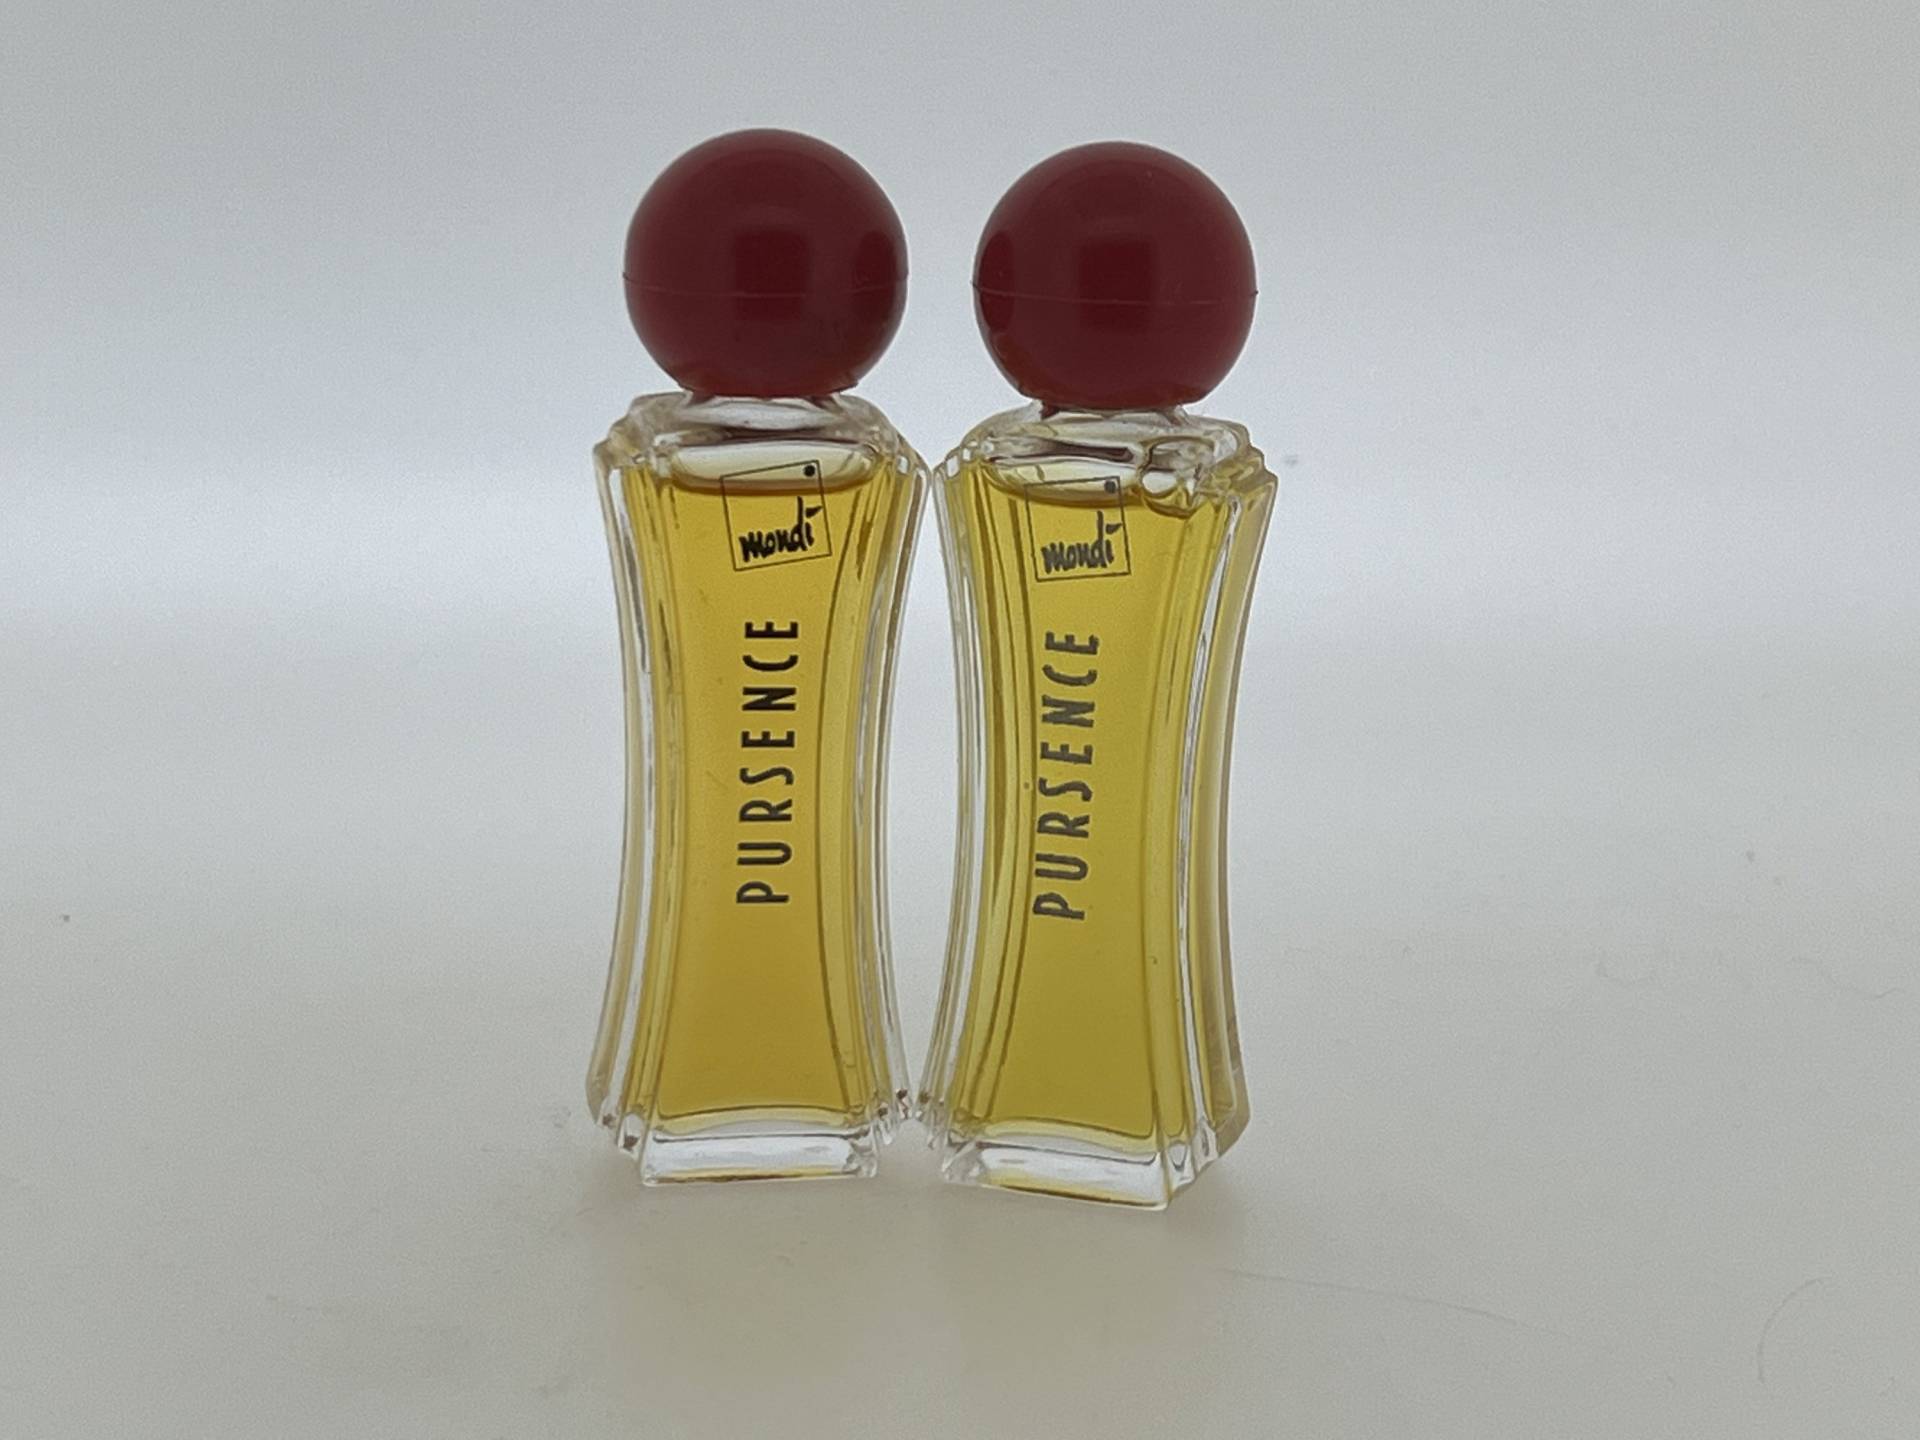 2 Miniatur Pursence Mondi 1991 Eau De Parfum 5 Ml von VintagGlamour